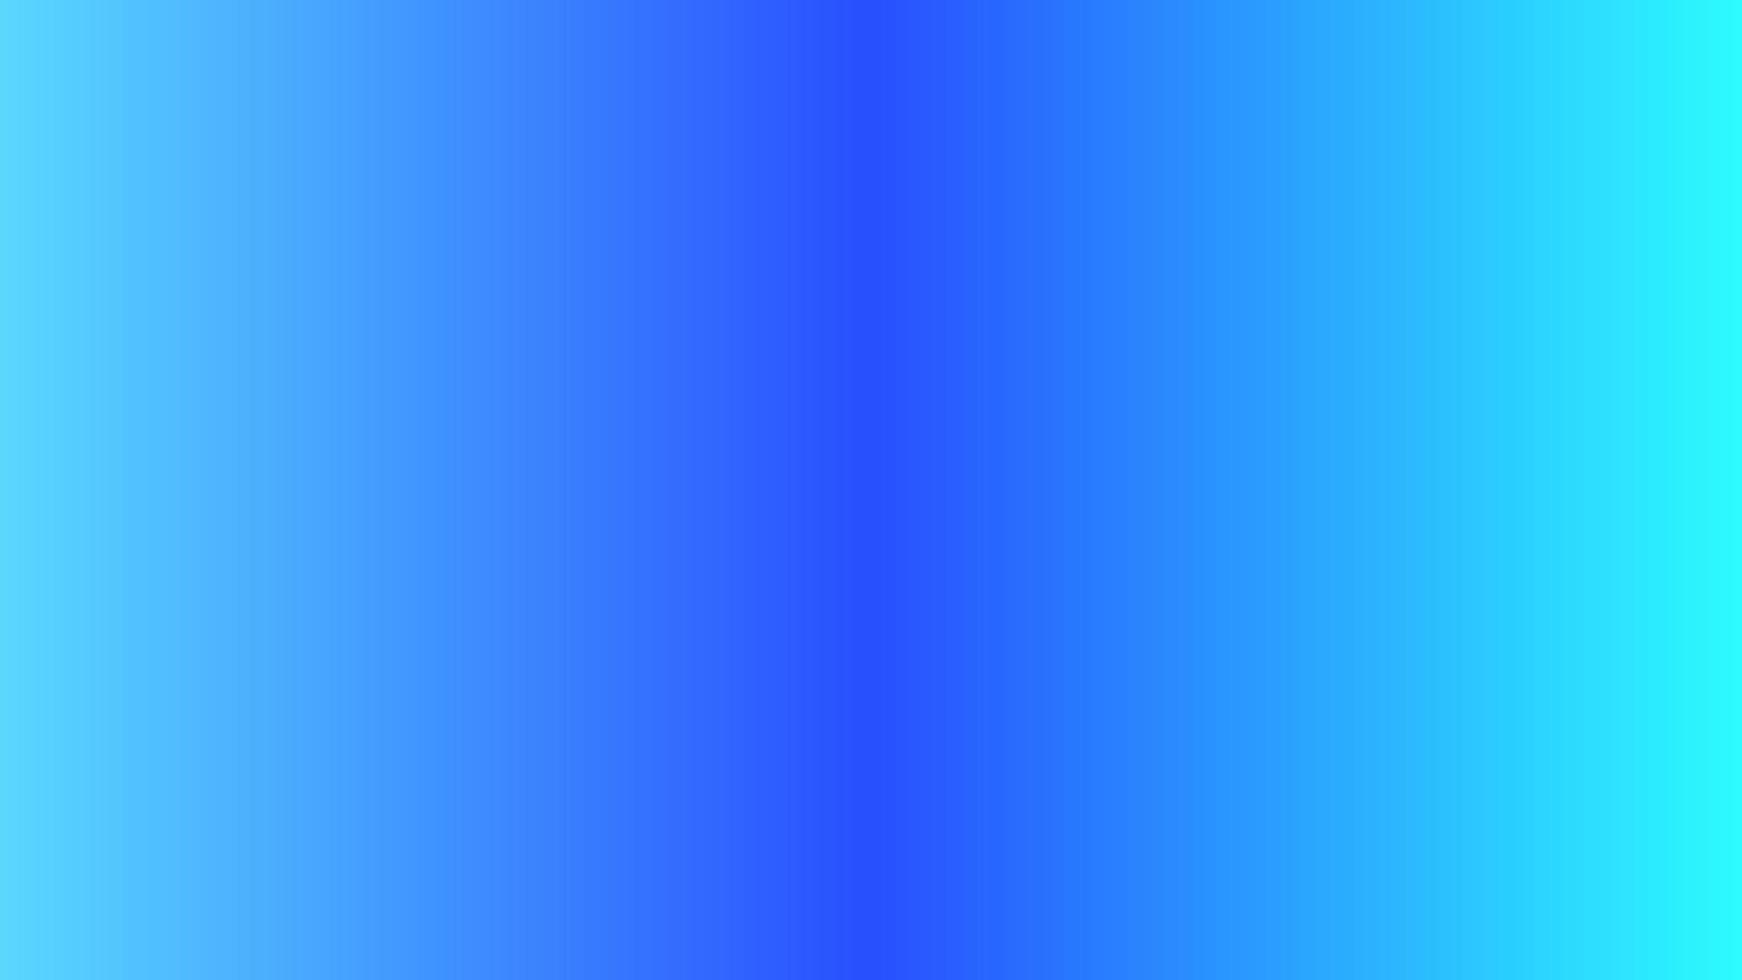 abstracte gradiëntachtergrond paars, blauw perfect voor ontwerp, behang, promotie, presentatie, website, banner enz. afbeeldingsachtergrond vector